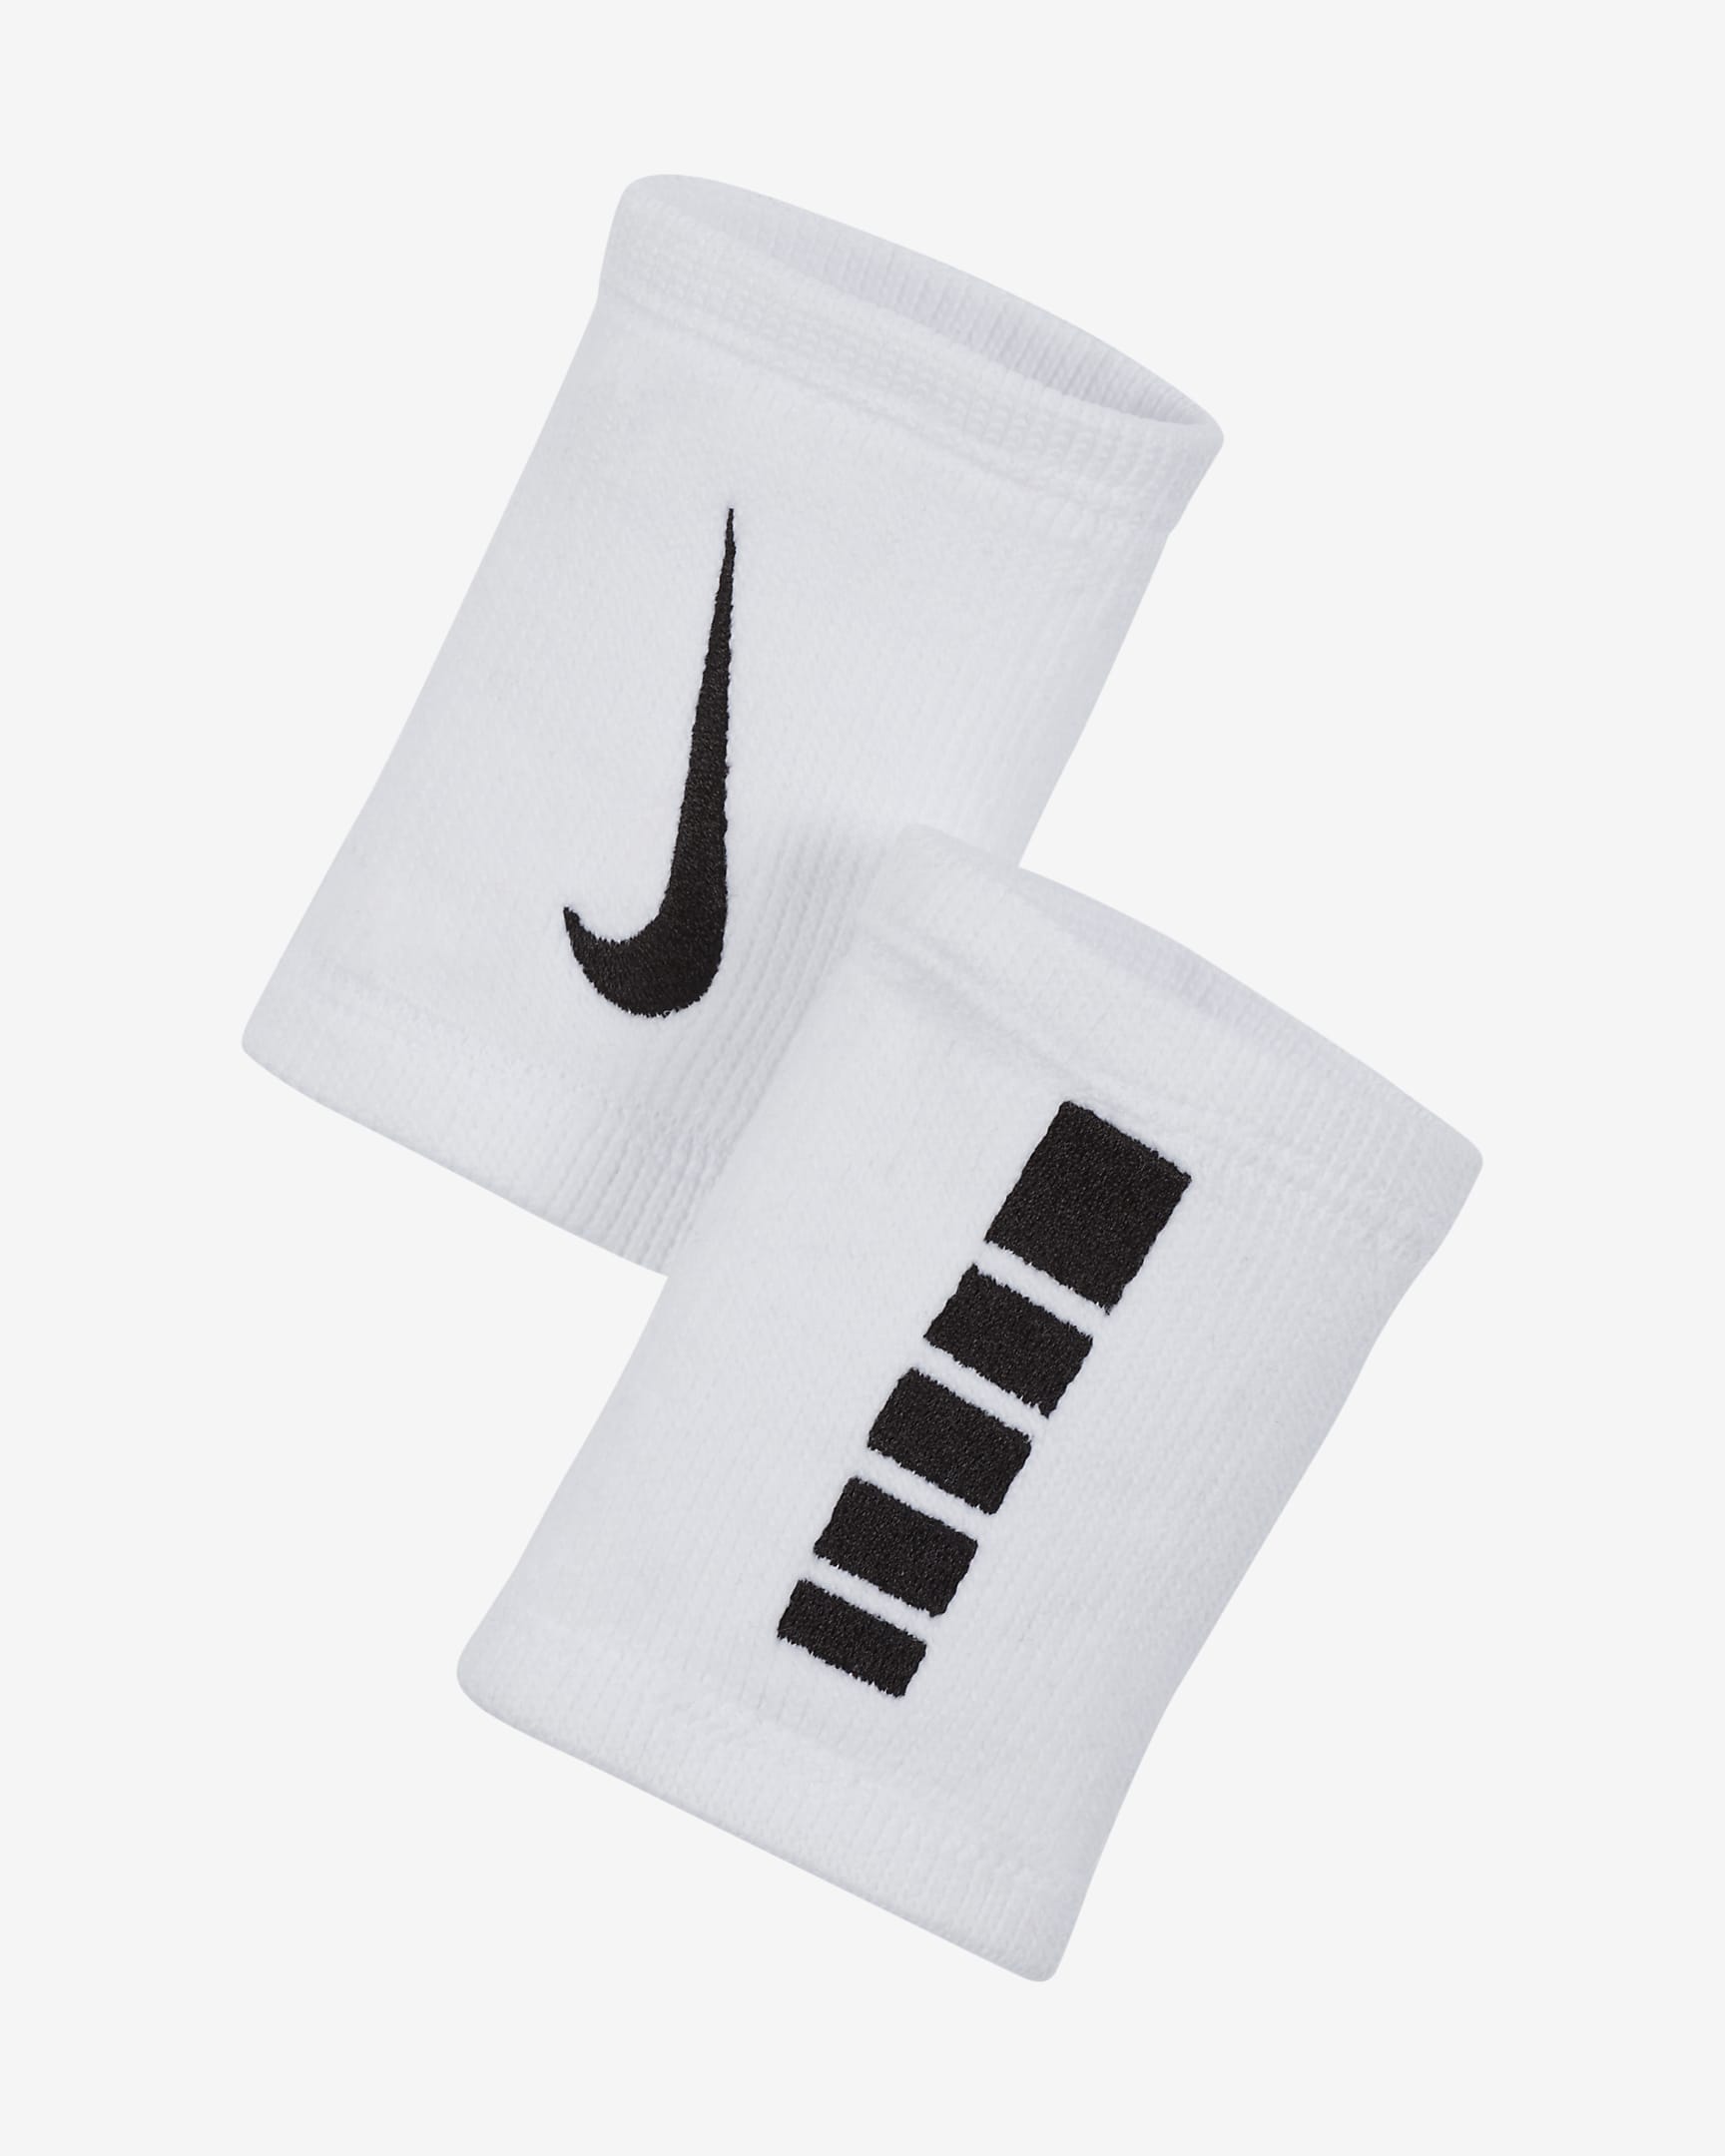 Nike Elite Doublewide Wristbands (2-Pack). Nike.com